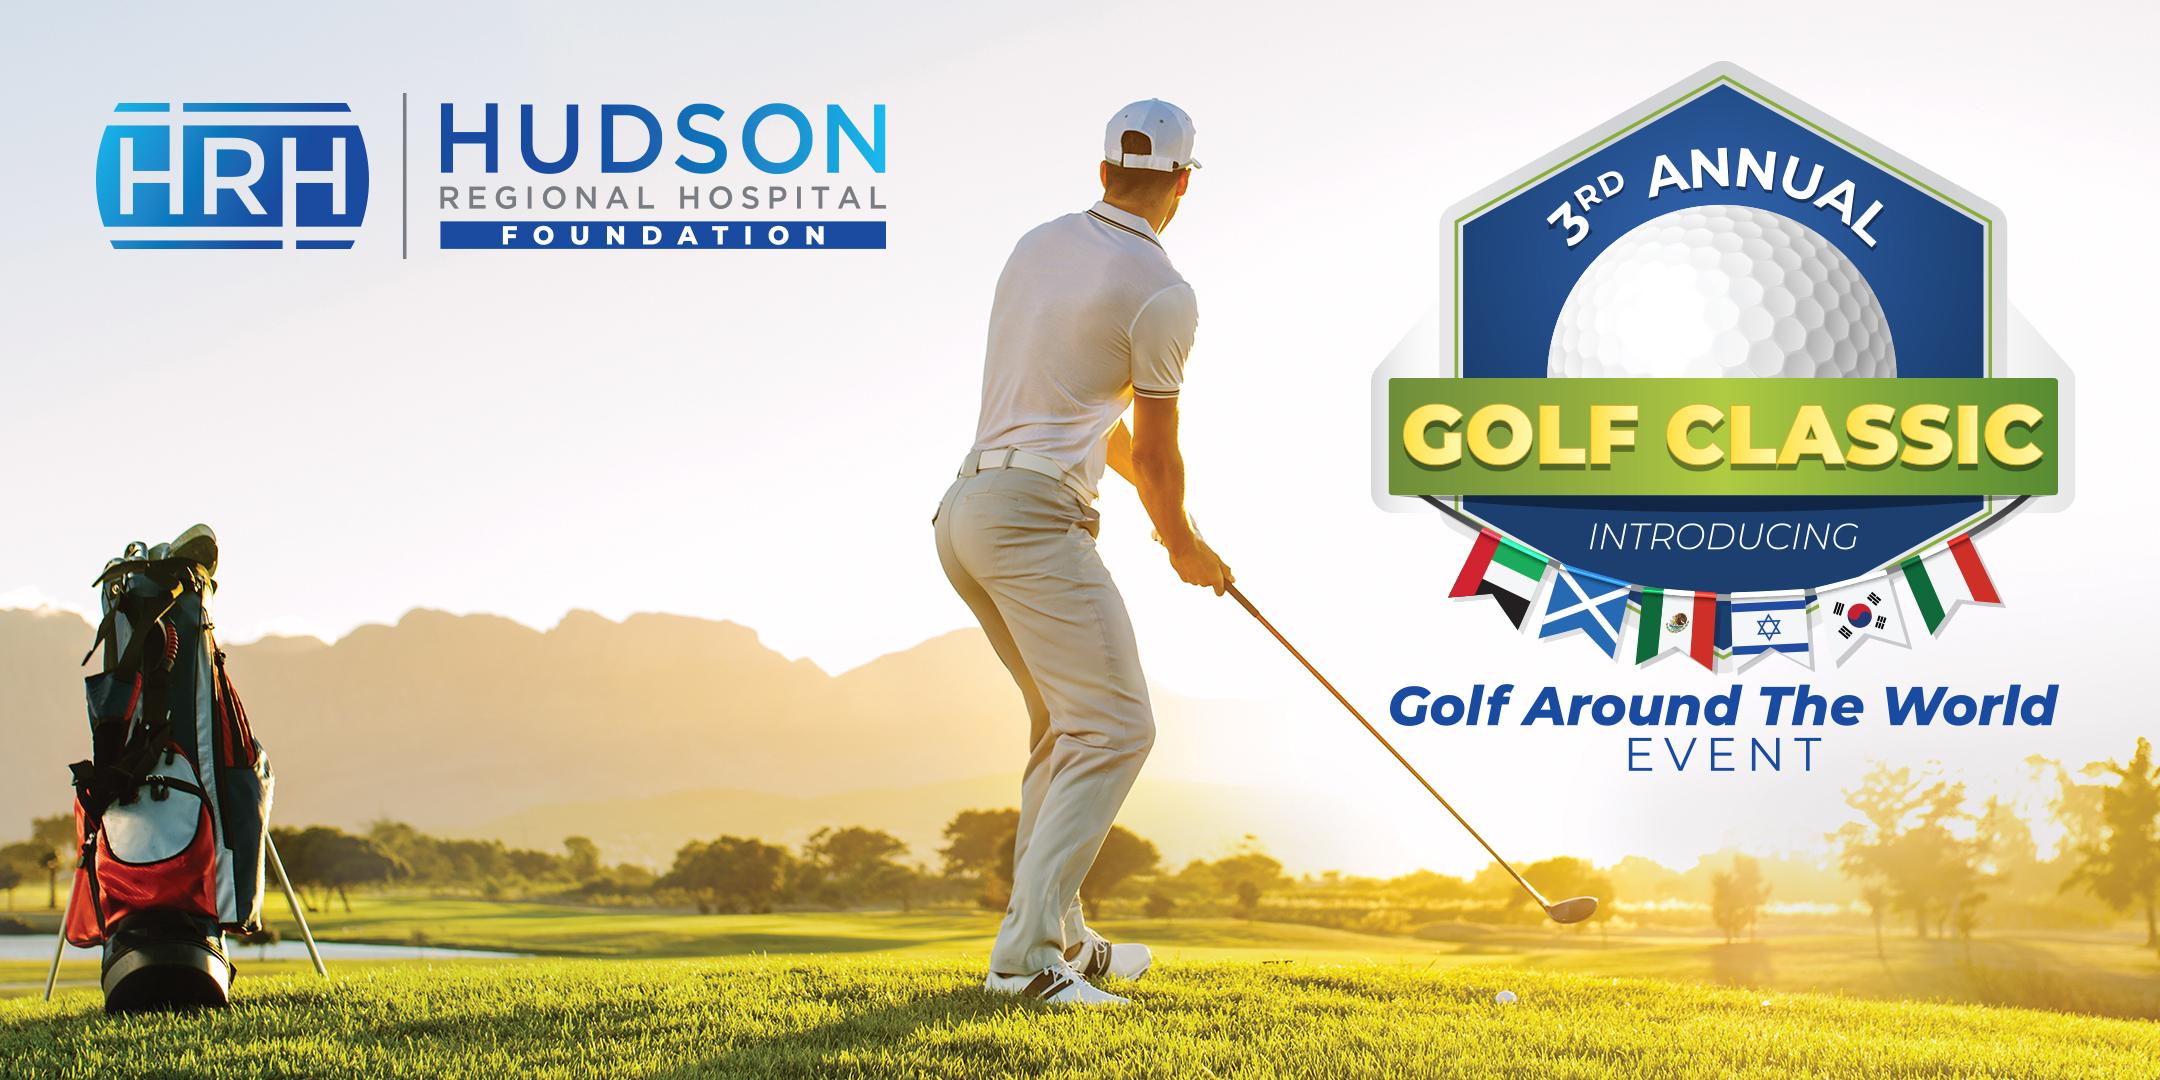 3rd Annual Hudson Regional Hospital Foundation Golf Classic